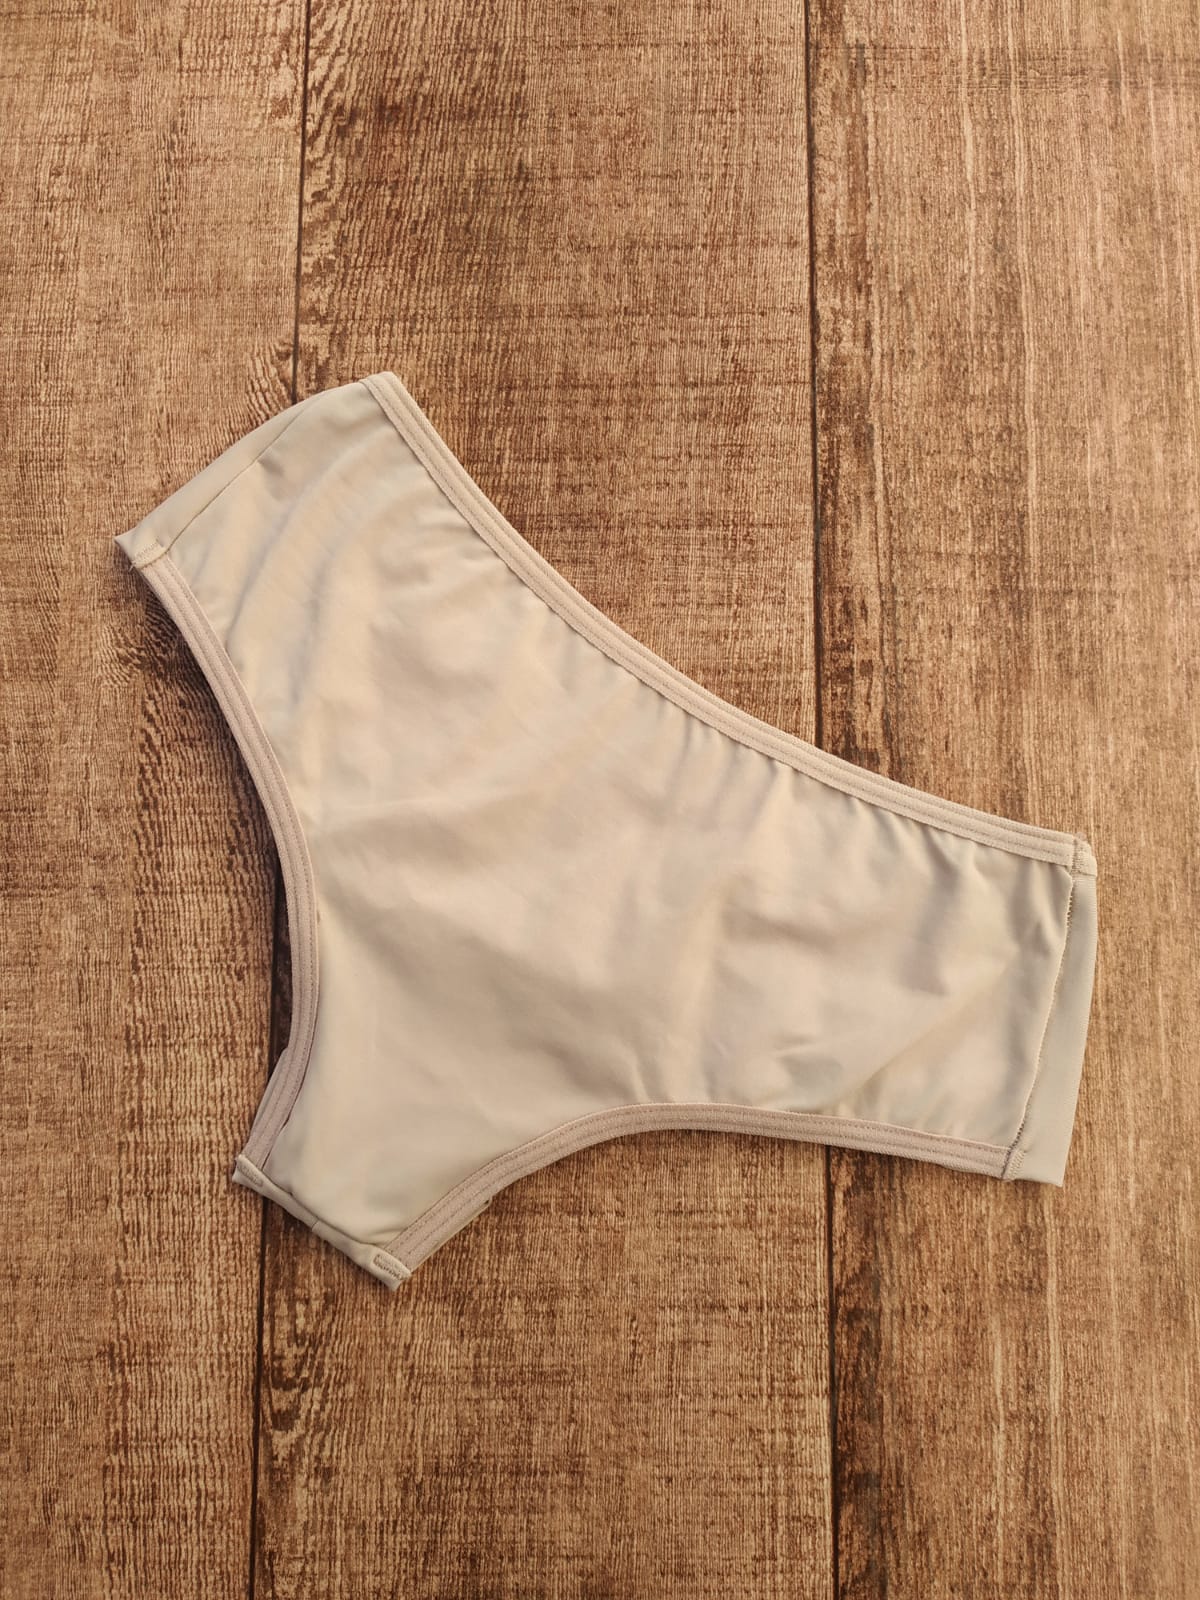 calcinha microfibra maçã lingerie atacado distribuidora de lingerie calcinha barata scaled